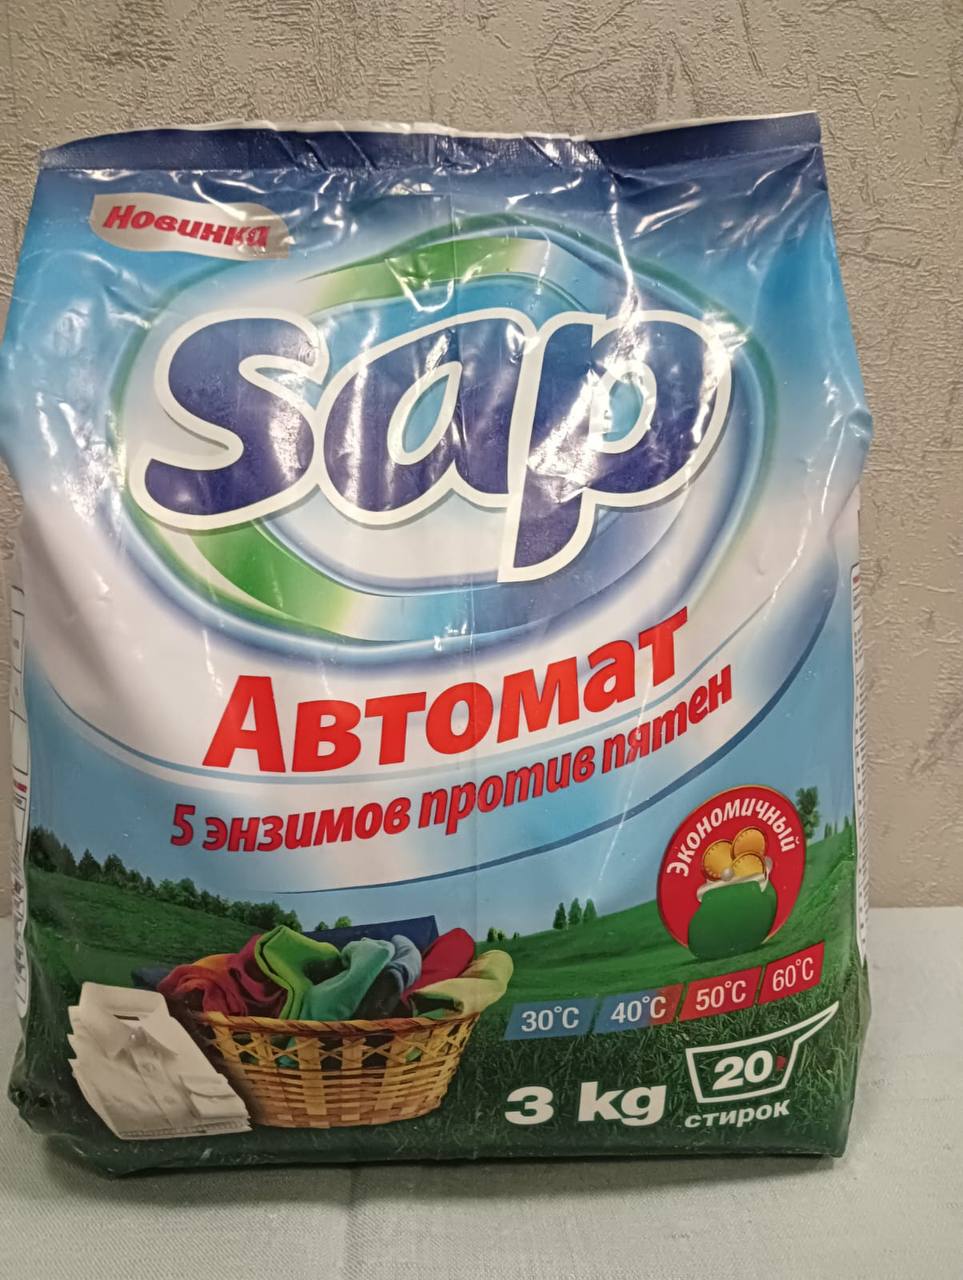 Оптовая продажа бытовой химии «Sap» из Туркменистана